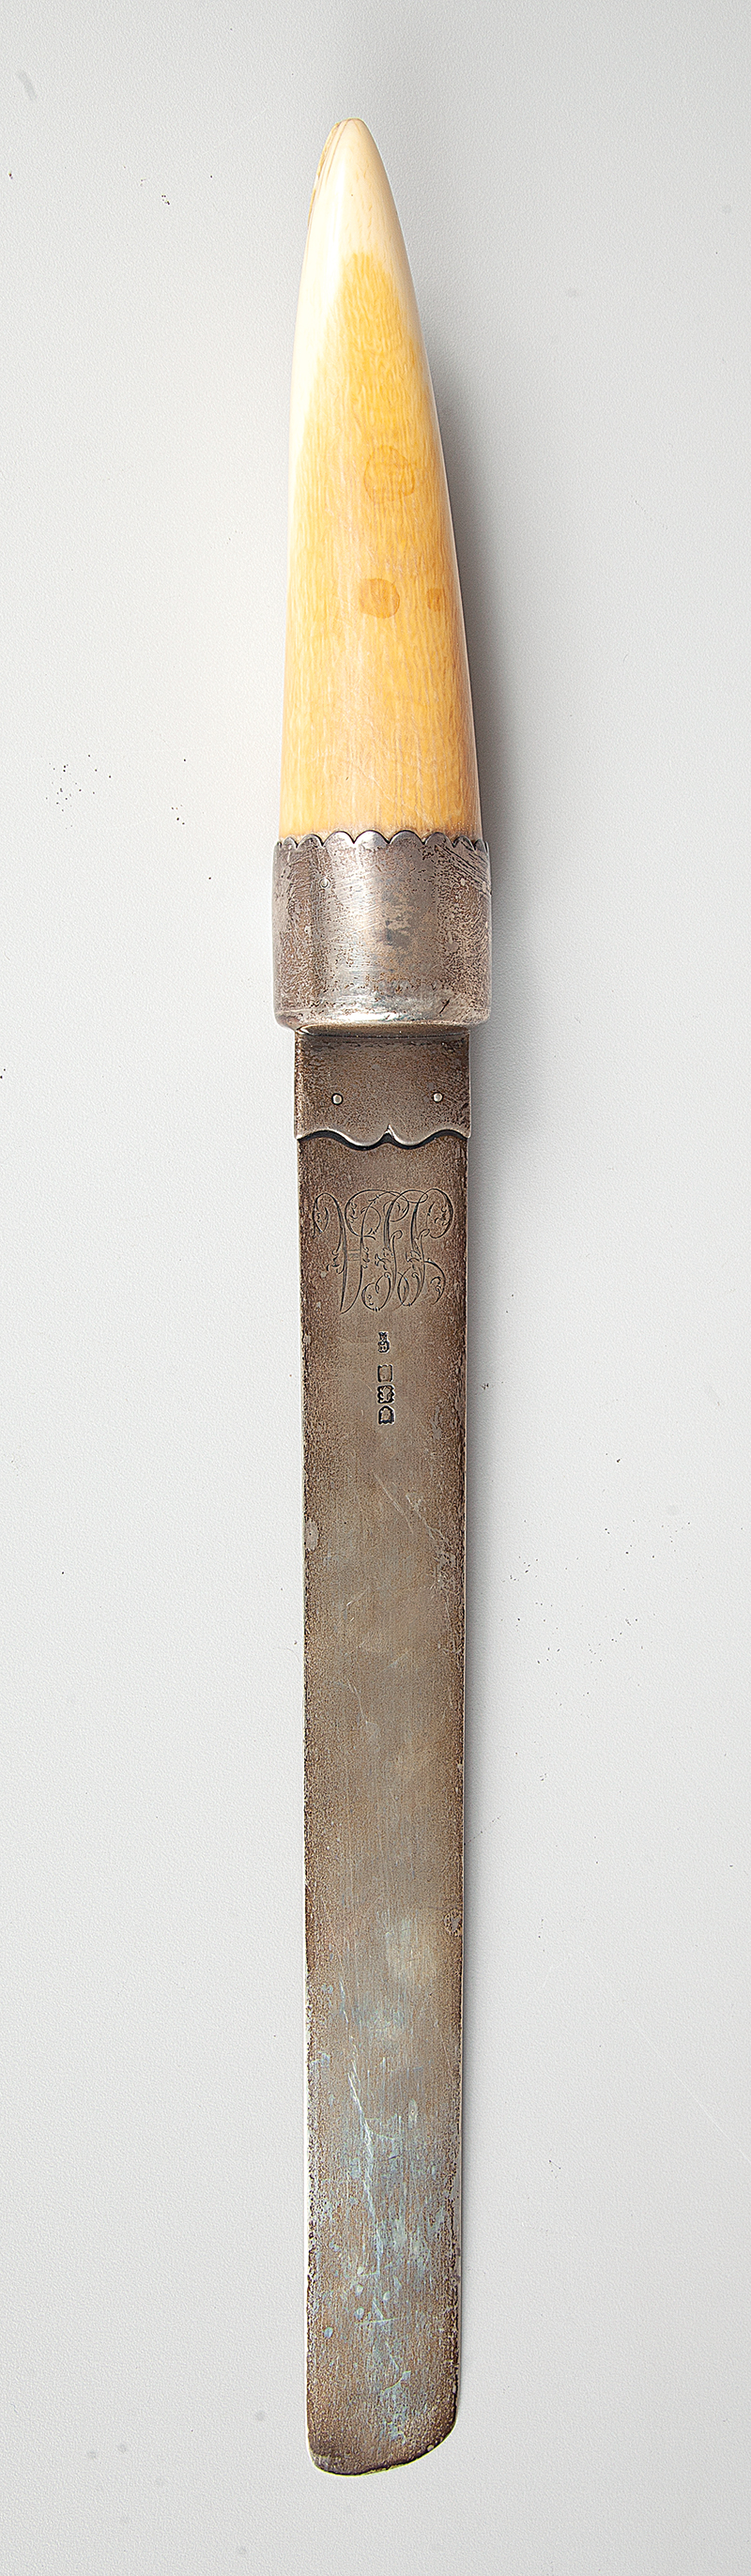 Grandes abridor de cartas de prata inglesa prateiro H.B com cabo de marfim medindo 42 cm. de comprimento 330g ` Séc. XX.